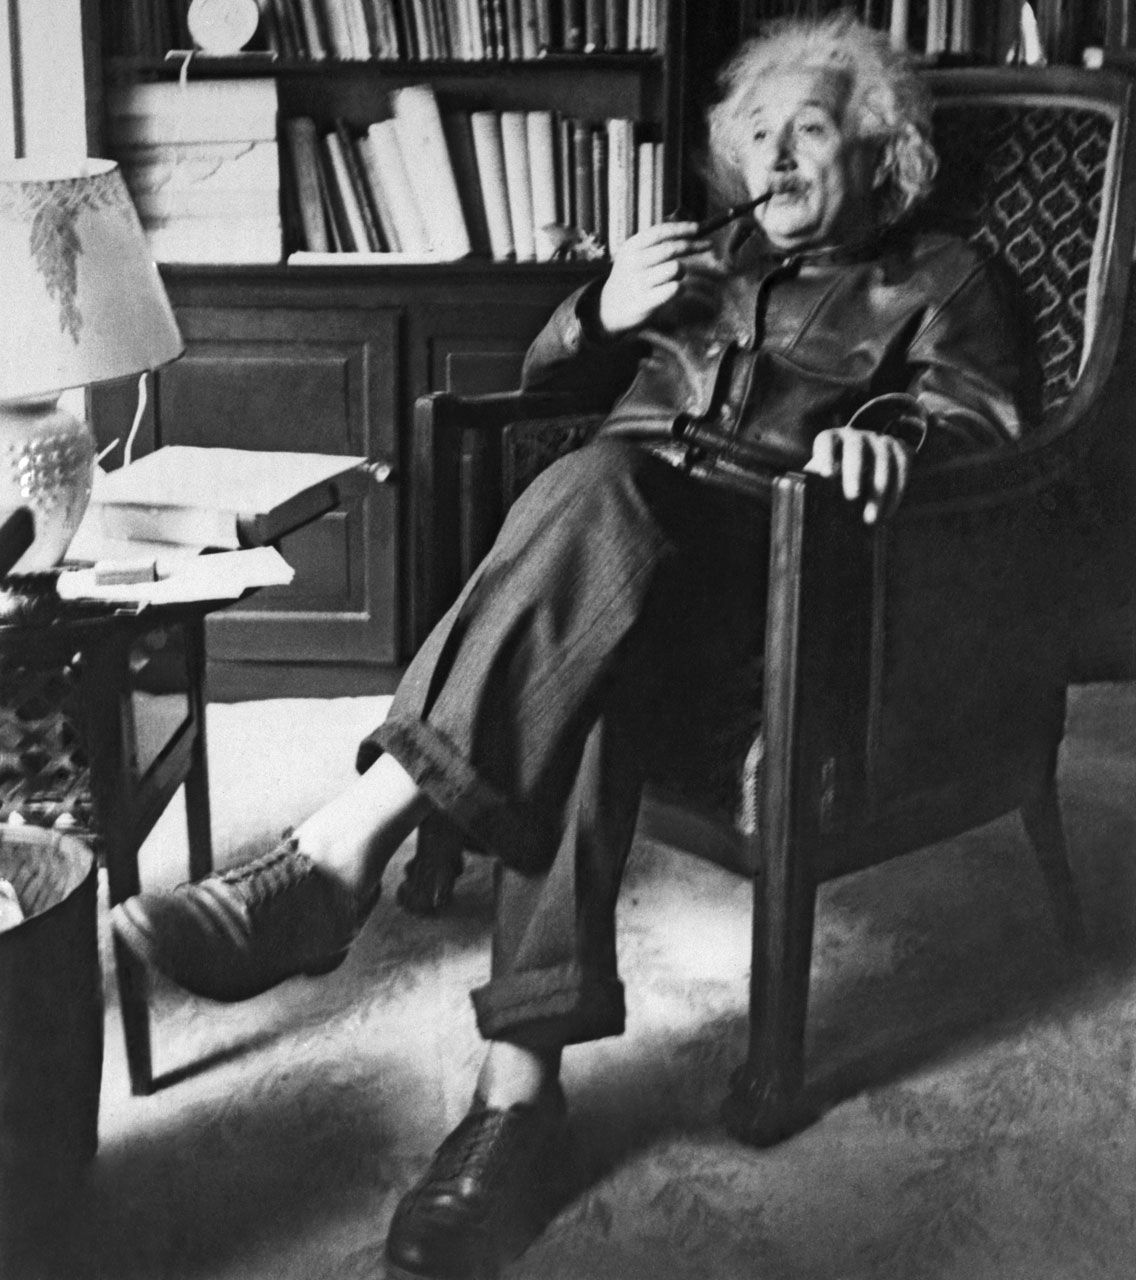 Nauka i historia - Albert Einstein